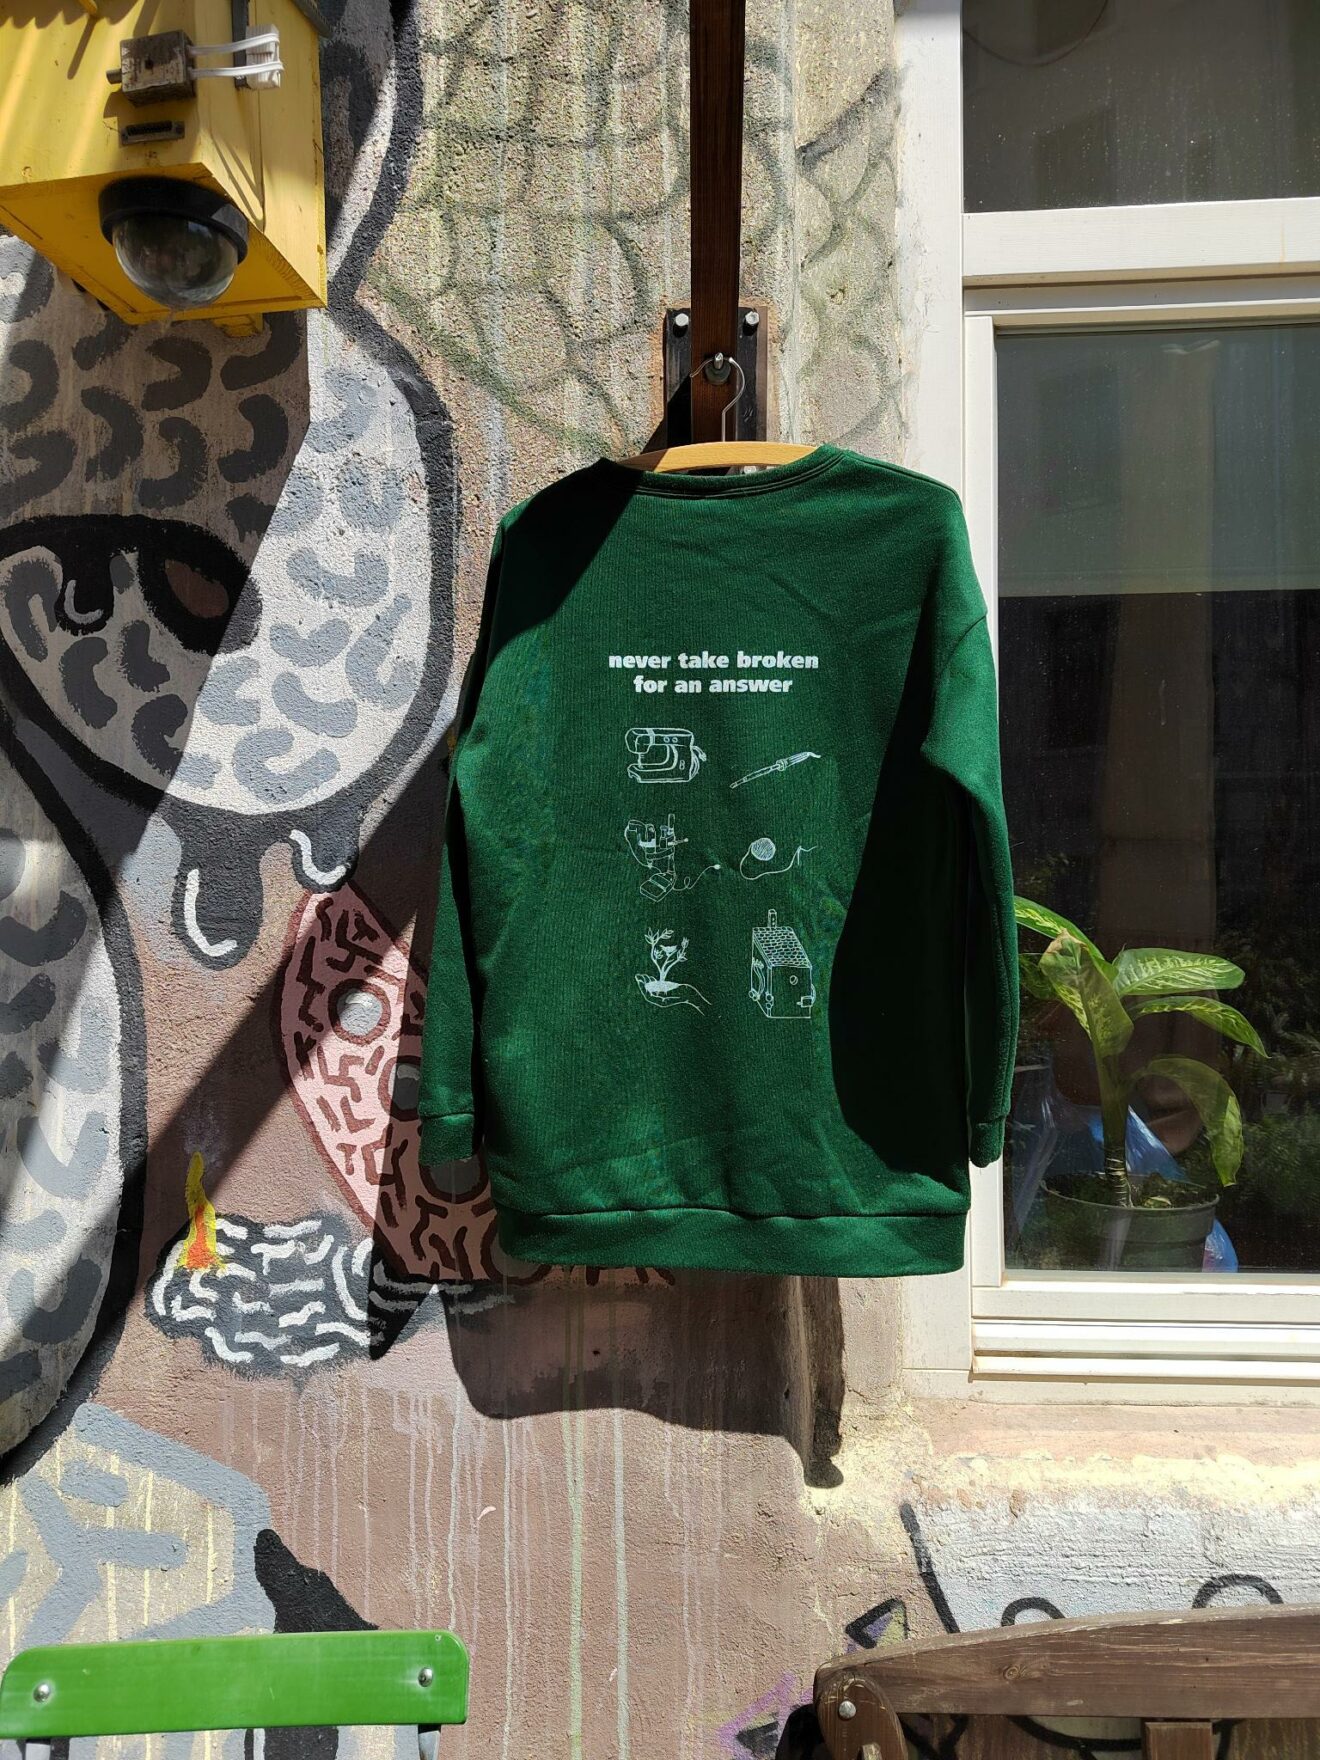 Ein grüner Pullover hängt an der Außenwand vor dem Café kaputt. Darauf sind verschiedene Piktogramme gedruckt und der Spruch "never take broken for an answer".